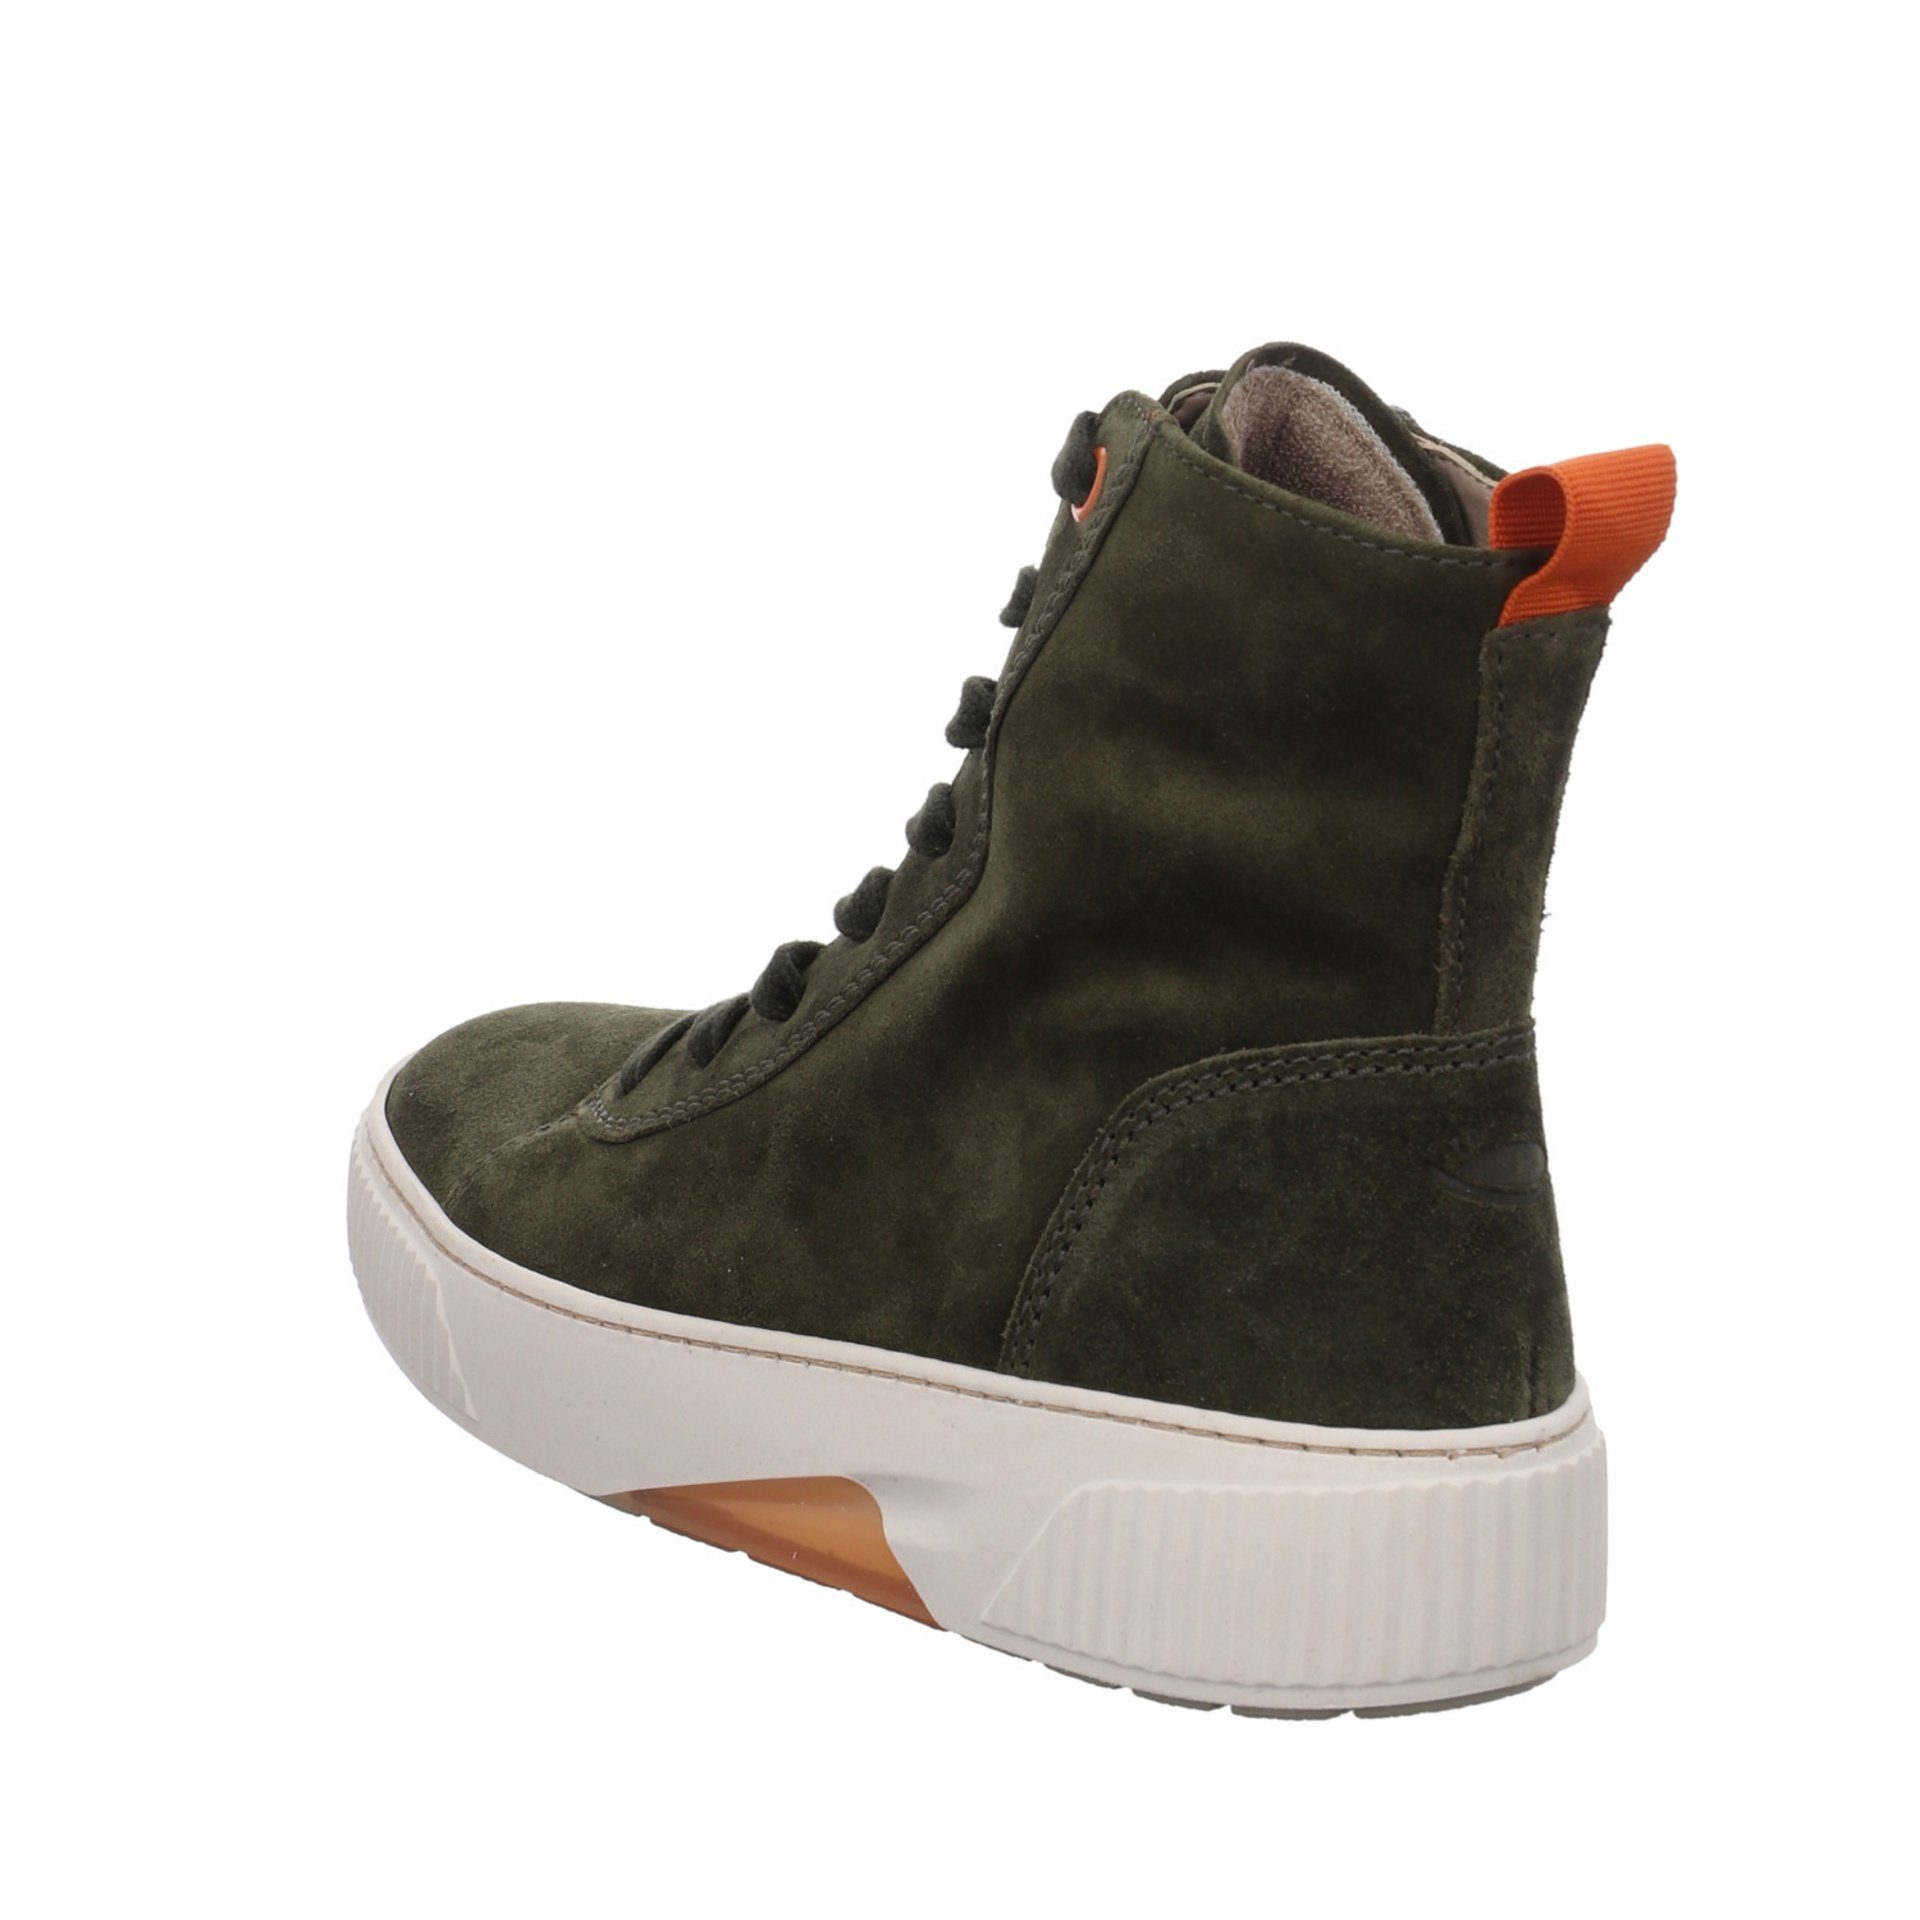 Gabor Damen Stiefel Schuhe Boots Elegant (07301826) Stiefel bosco/orange Veloursleder Klassisch